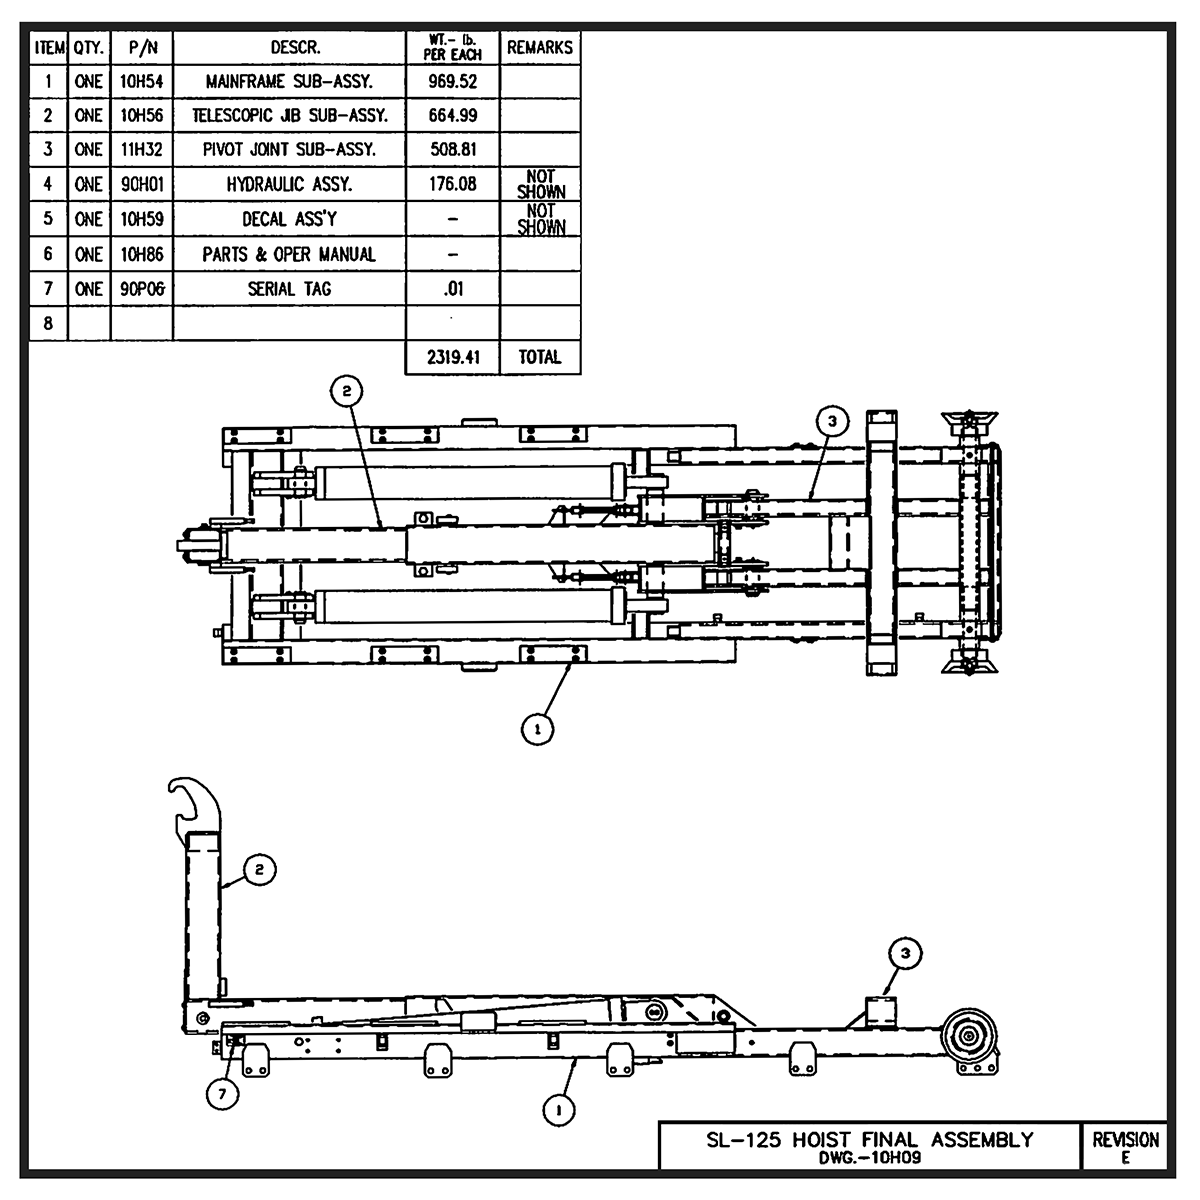 Swaploader SL-125 Hoist Final Assembly Diagram